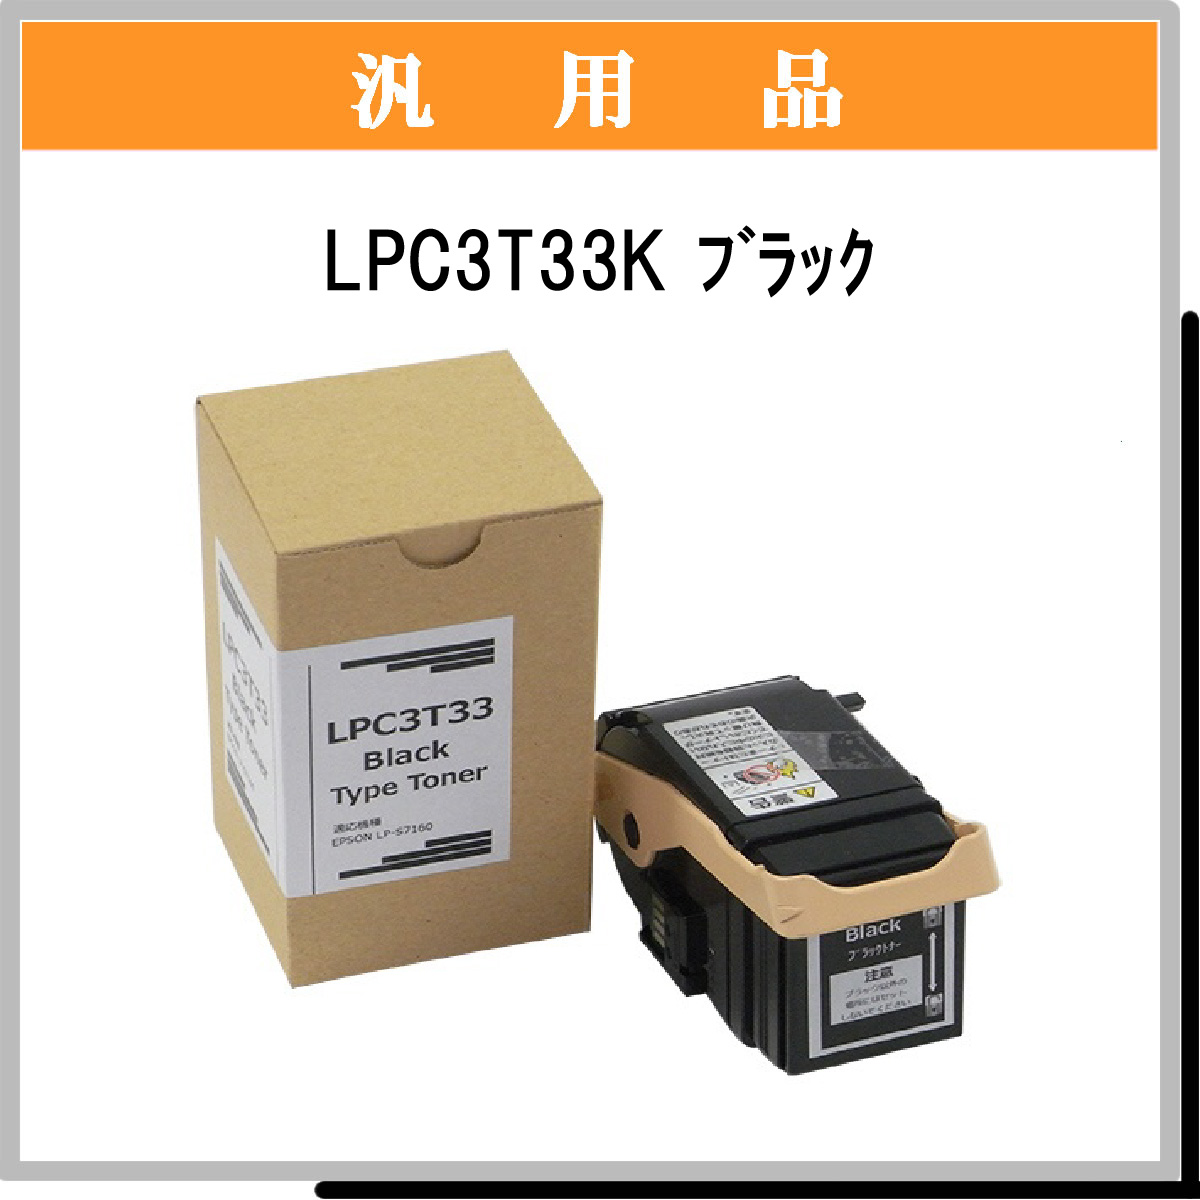 EPSON トナー LPC3T31M プリンター・FAX用インク